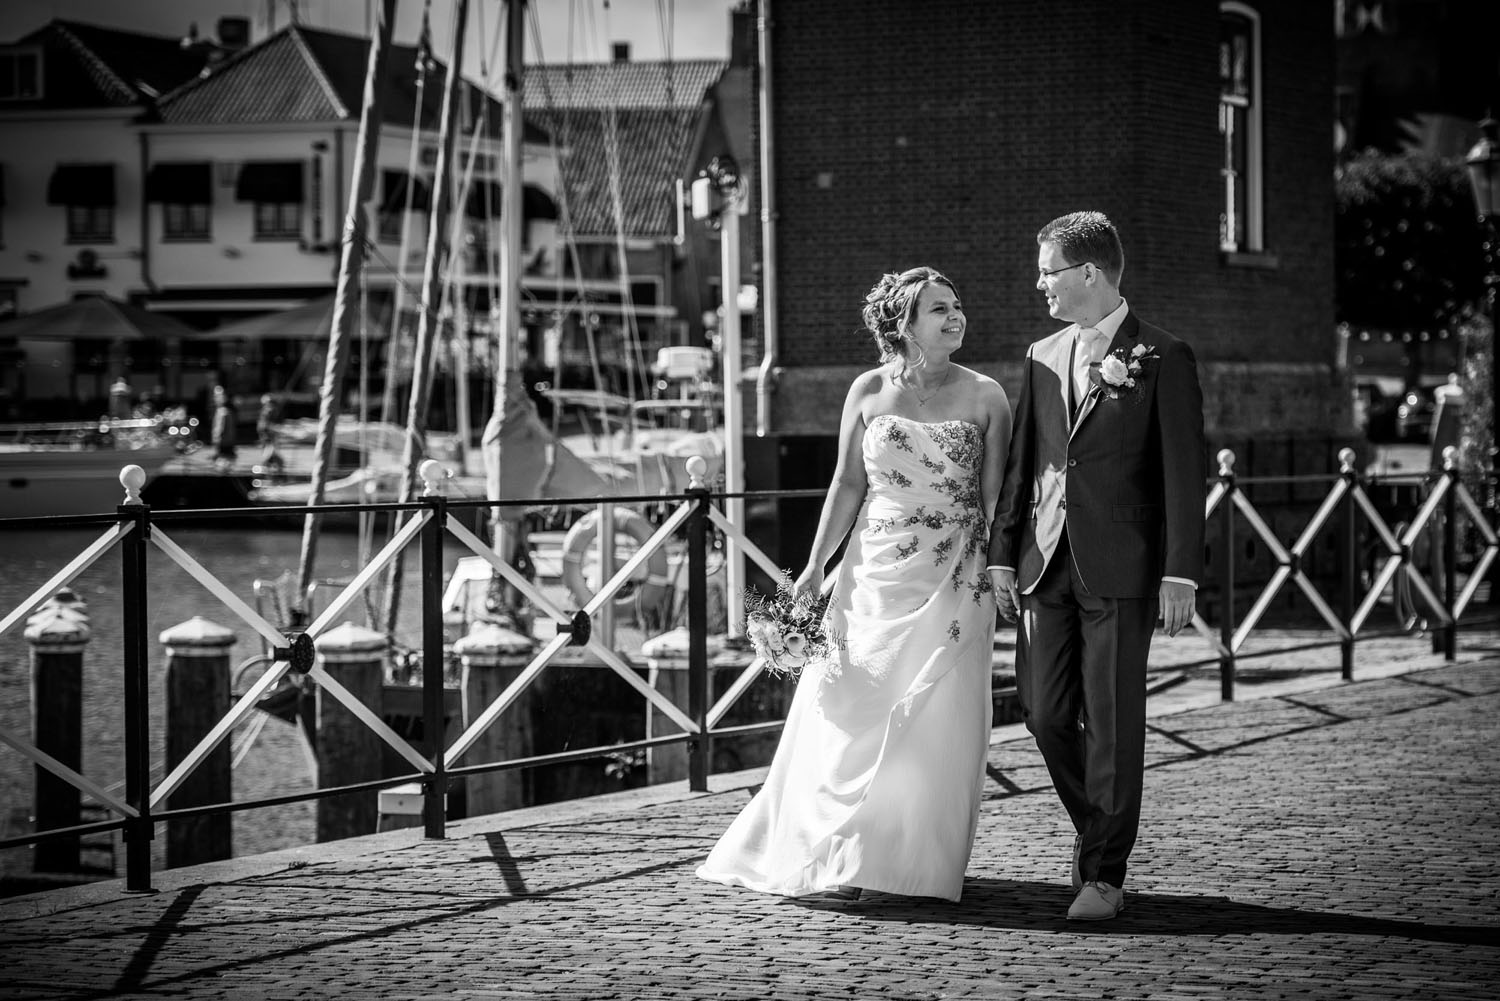 Copy of Willemstad, bruidsfotografie, aan de haven. trouwfotograaf Cfoto komt ook uit de buurt van Willemstad